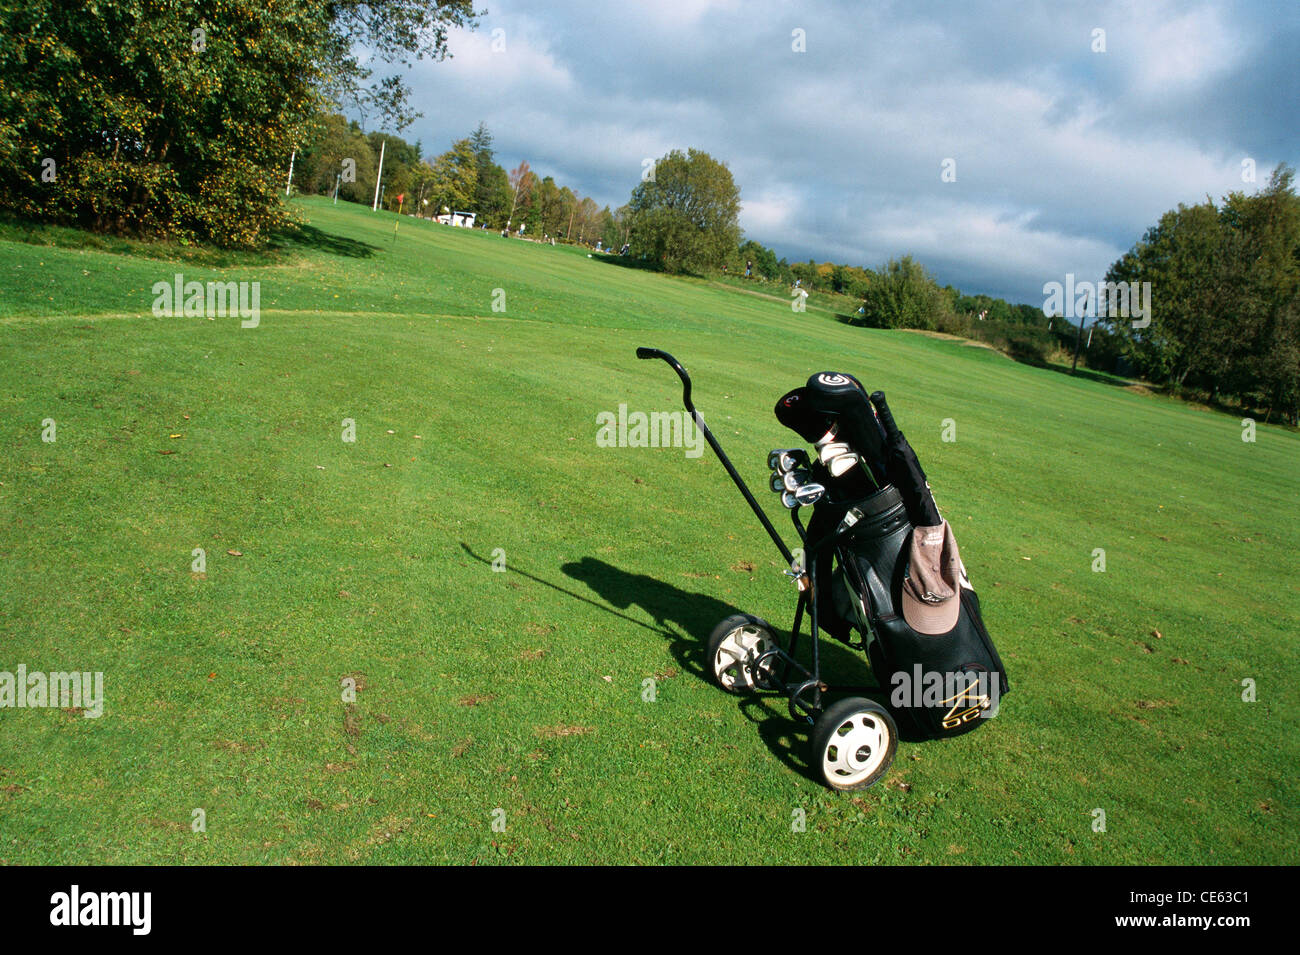 Club de Golf et sac de golf cart on golf course Banque D'Images